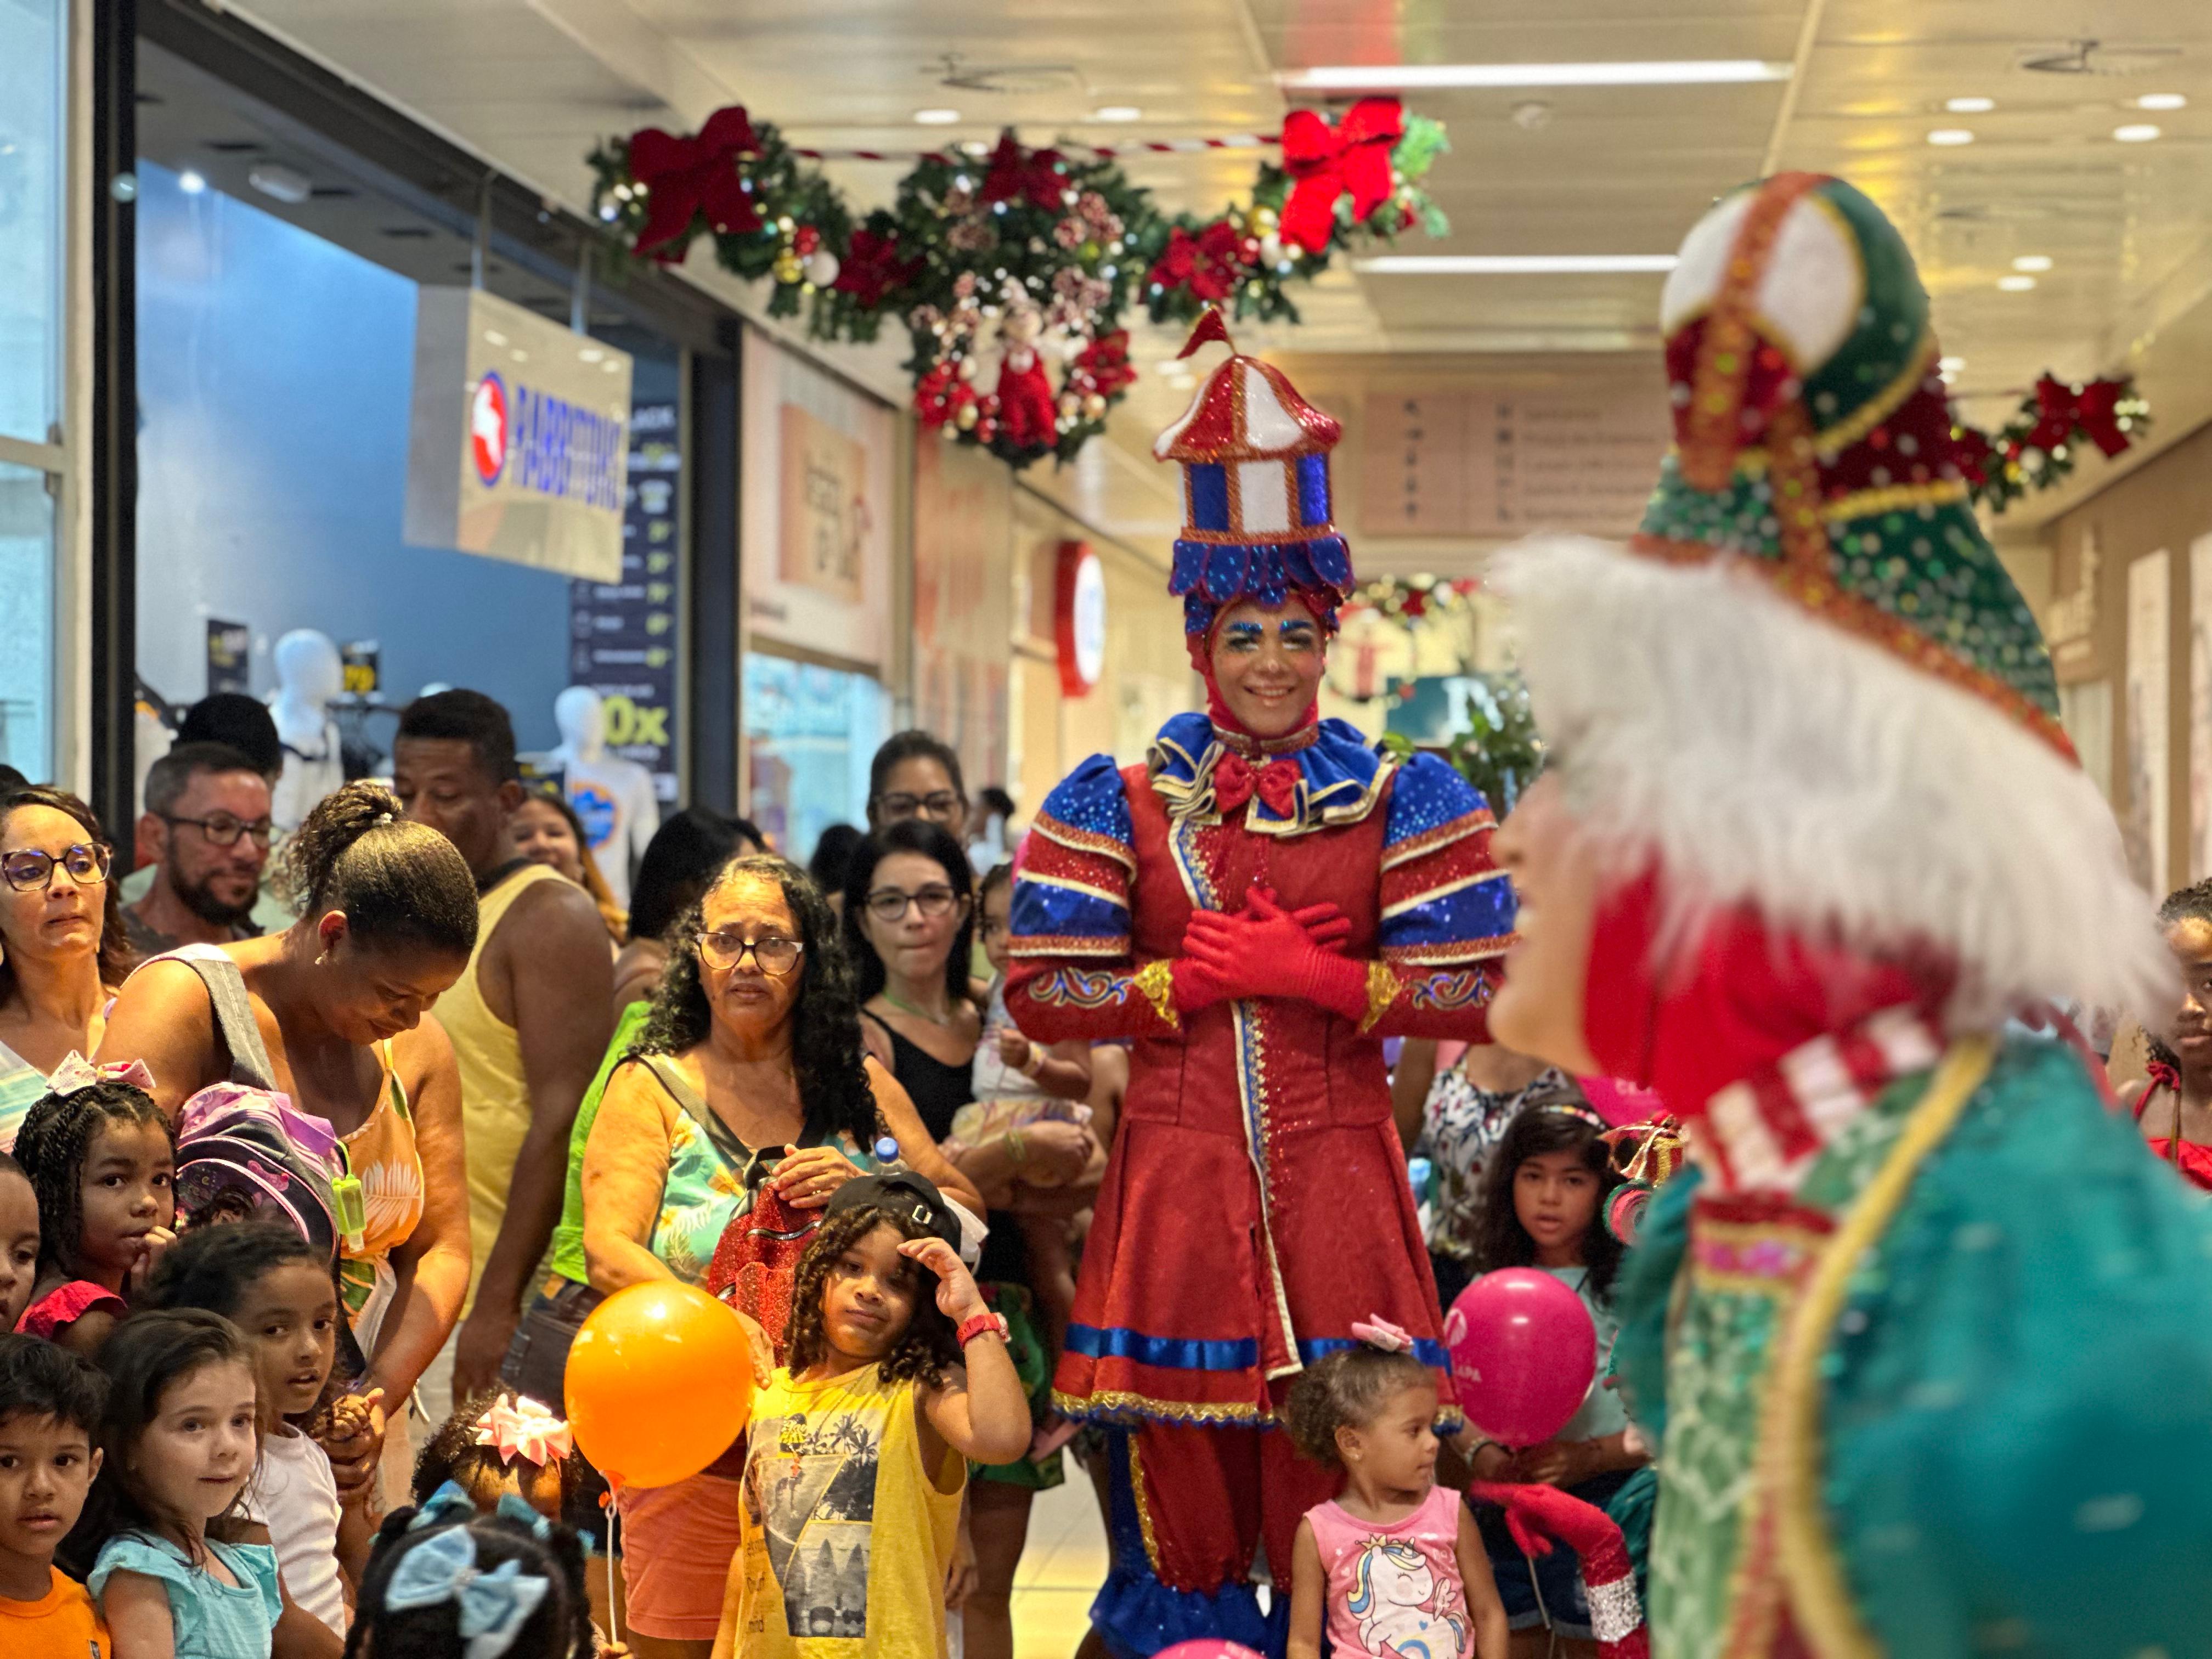 Papai Noel chega com a magia do circo no Shopping Center Lapa(Divulgação)